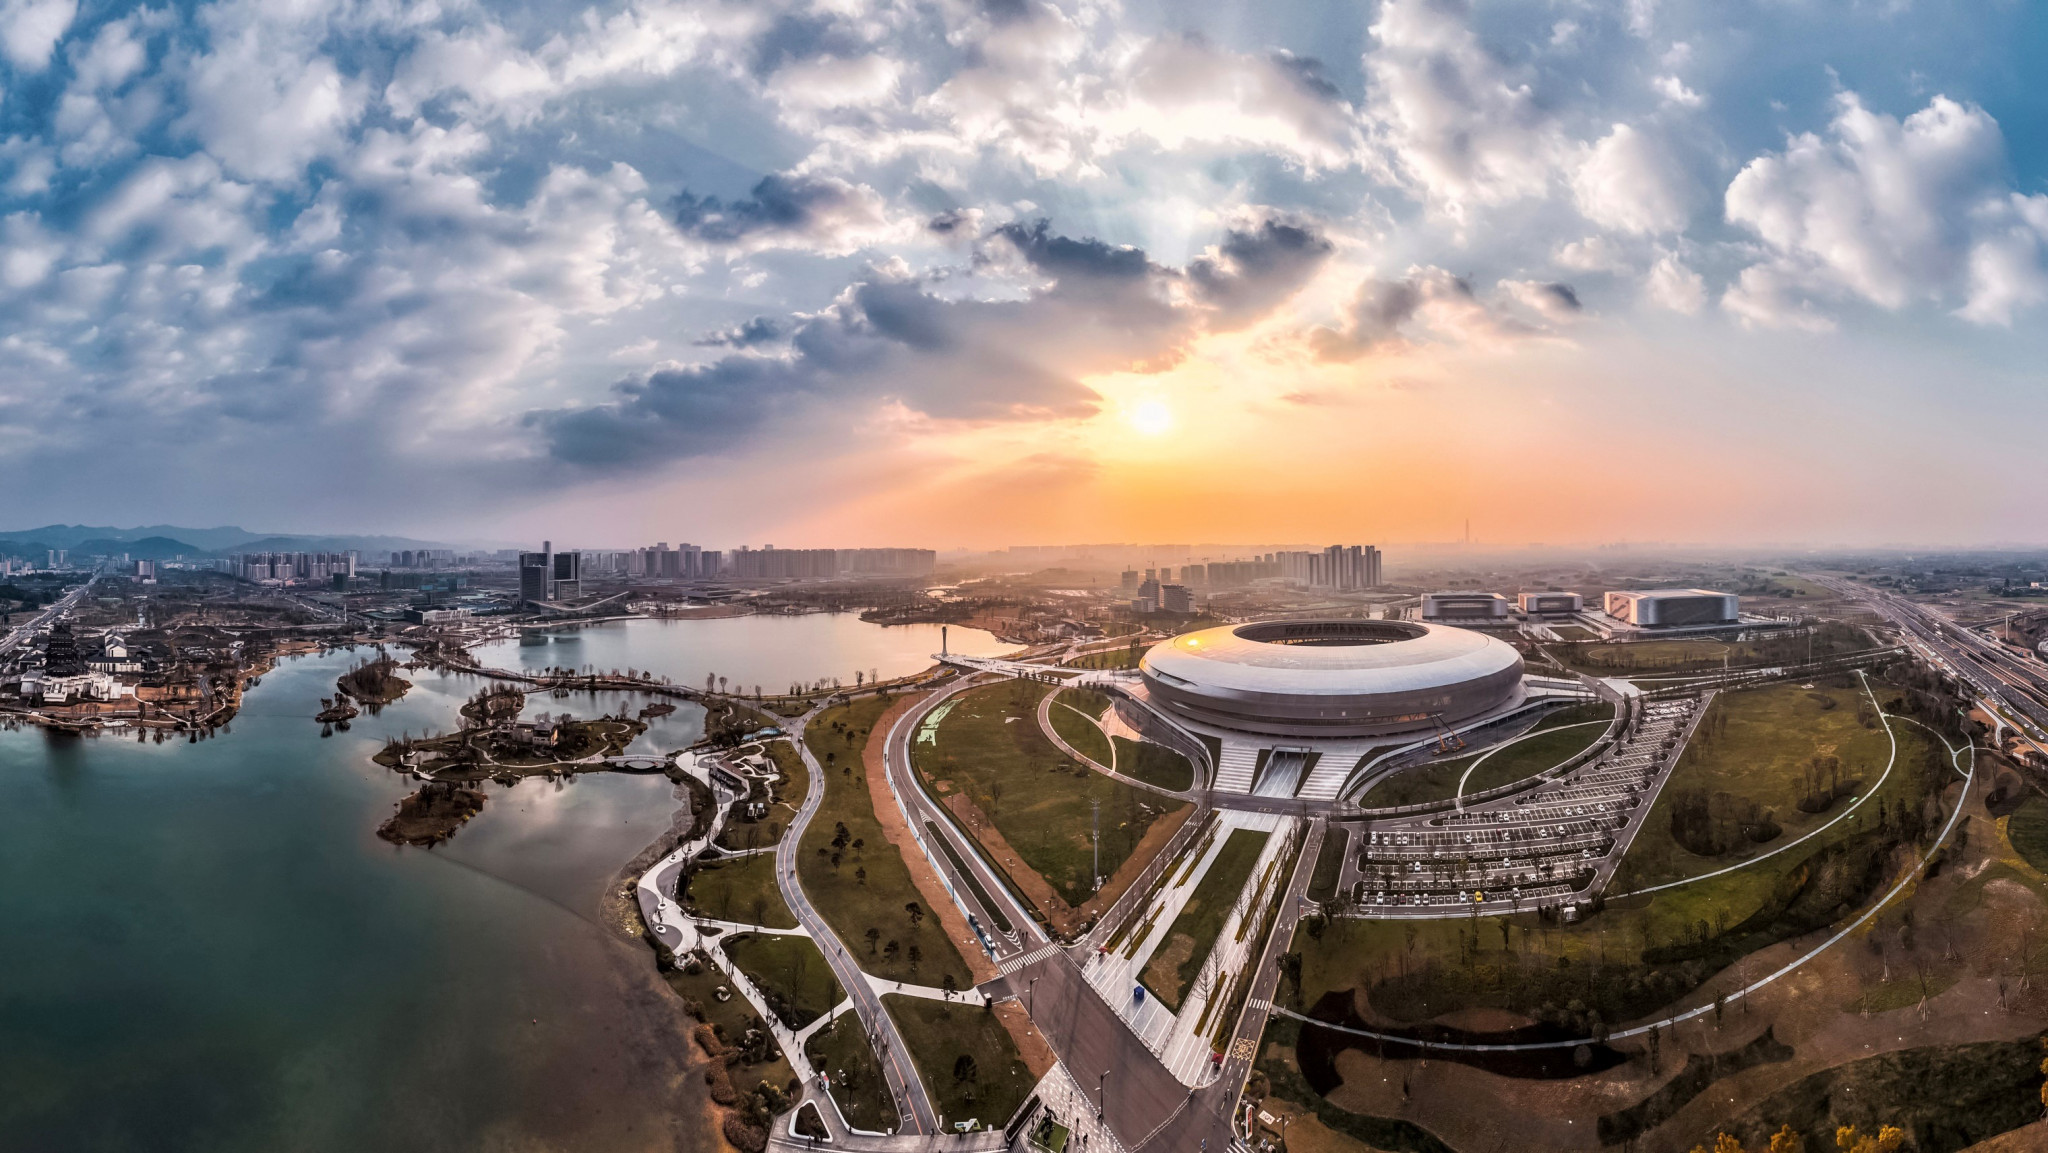 Chengdu 2021 FISU Games museum to open this summer